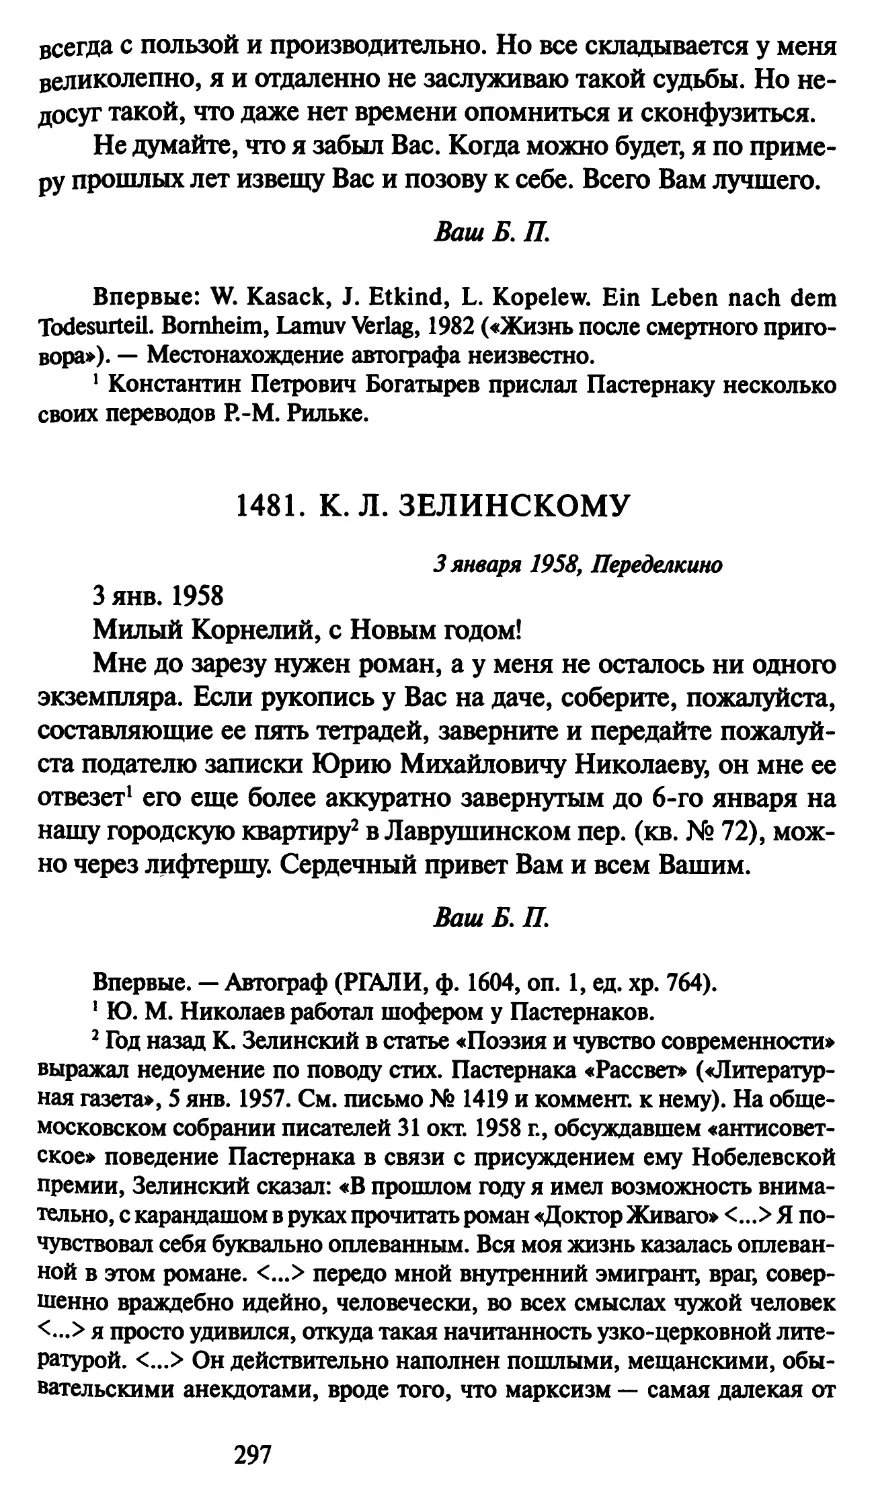 1481. К. Л. Зелинскому 3 января 1958